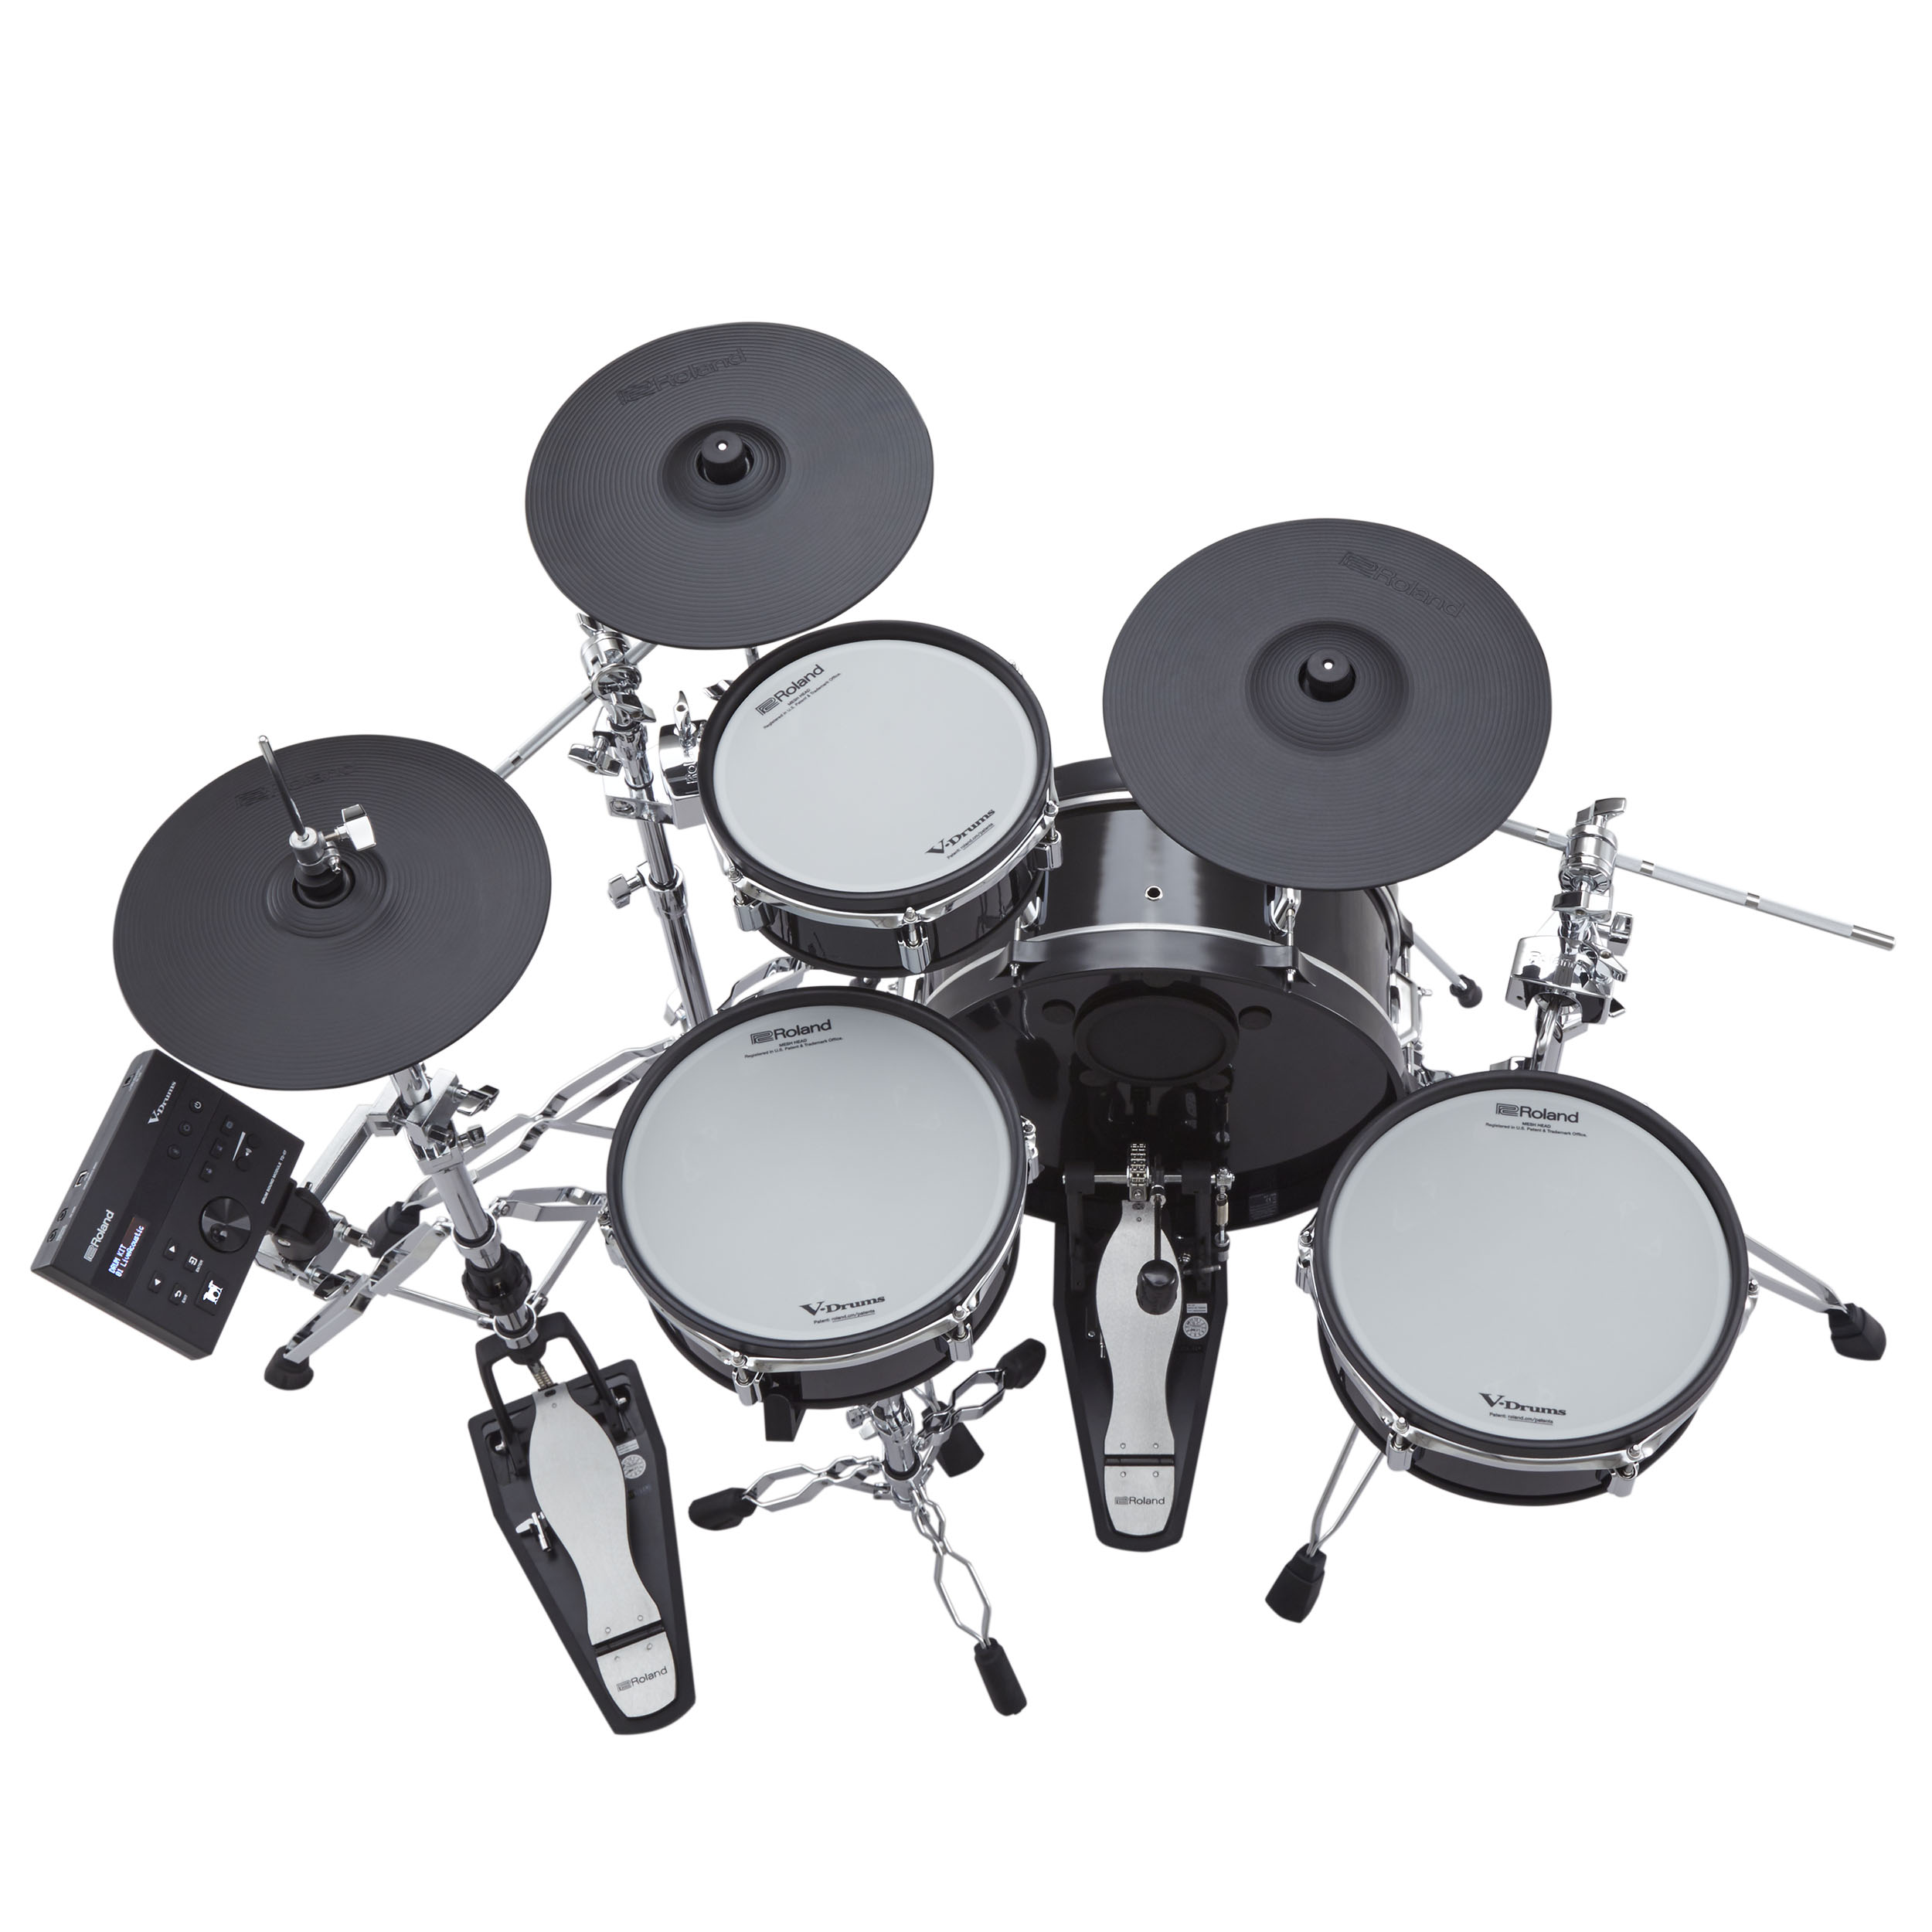 Roland Vad 103 V-drums Acoustic Design 4 Futs - Batería electrónica completa - Variation 3